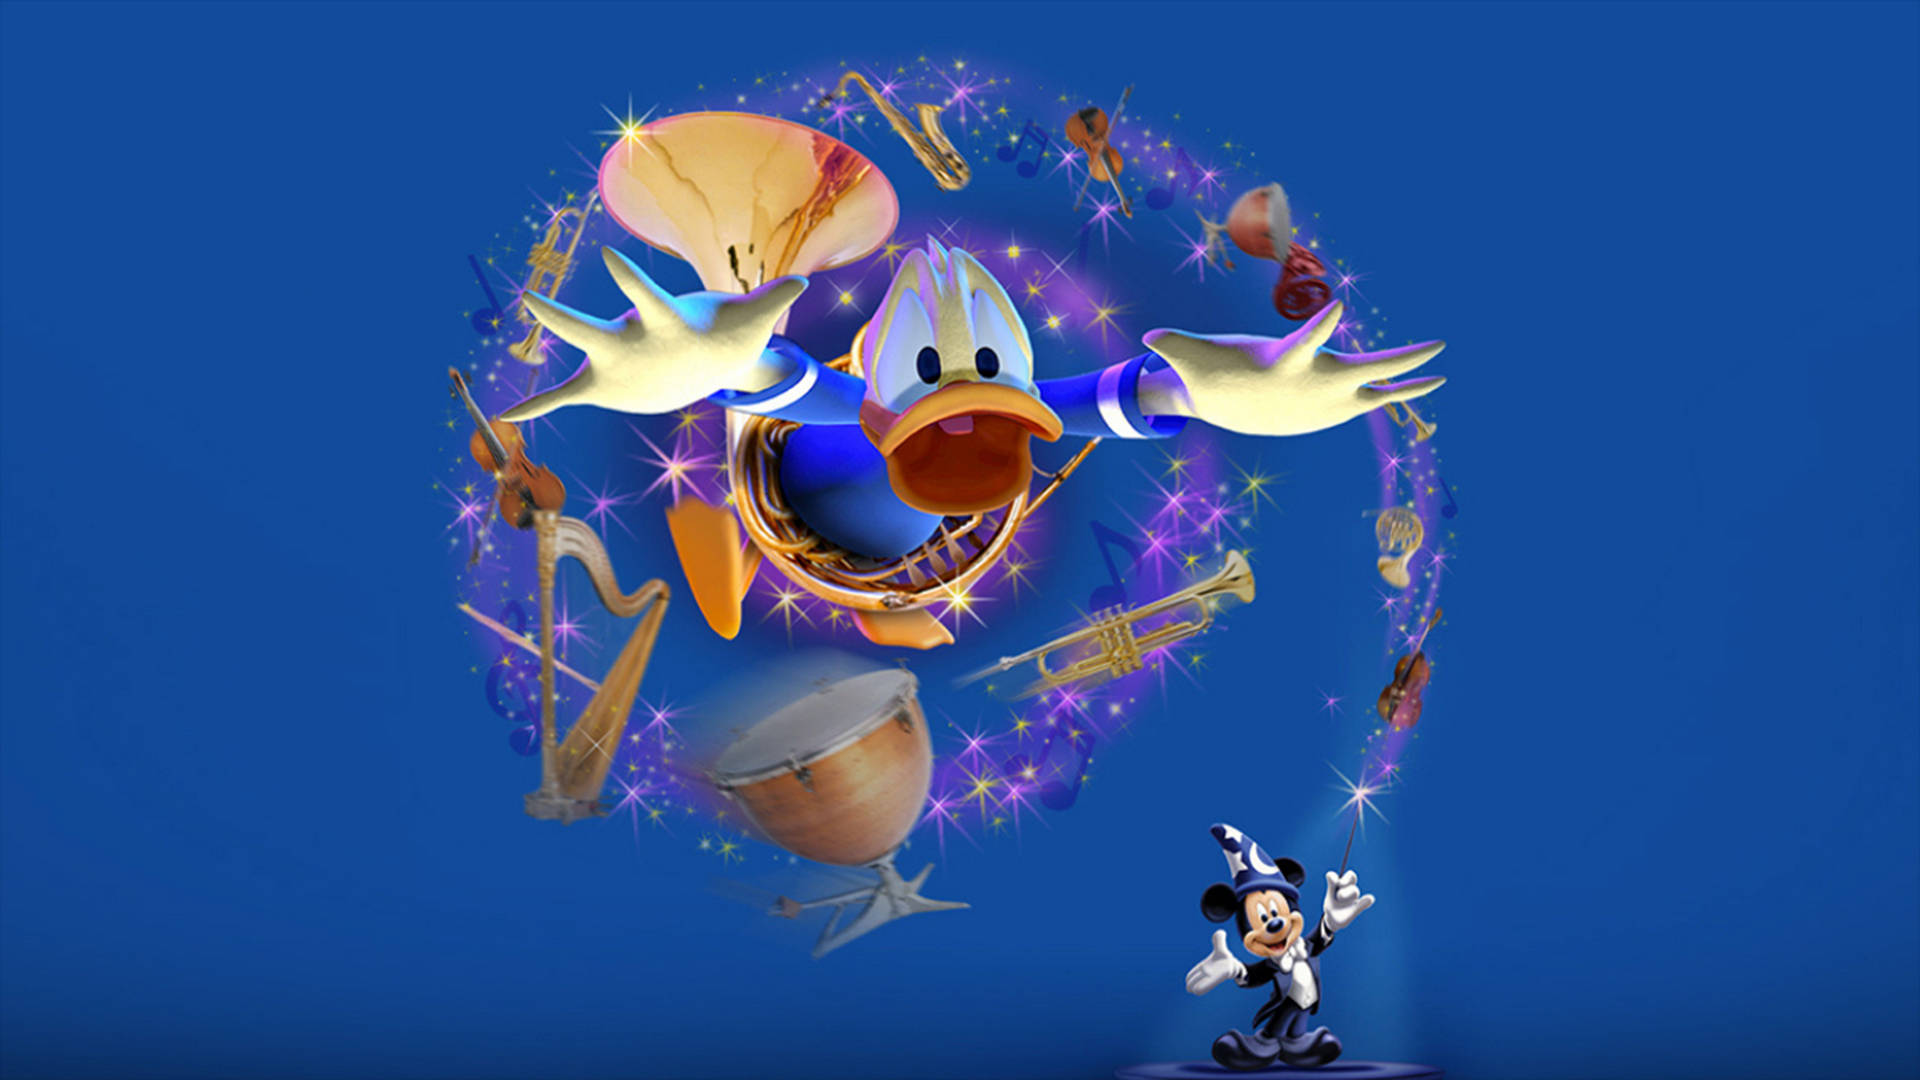 3d Magical Donald Duck